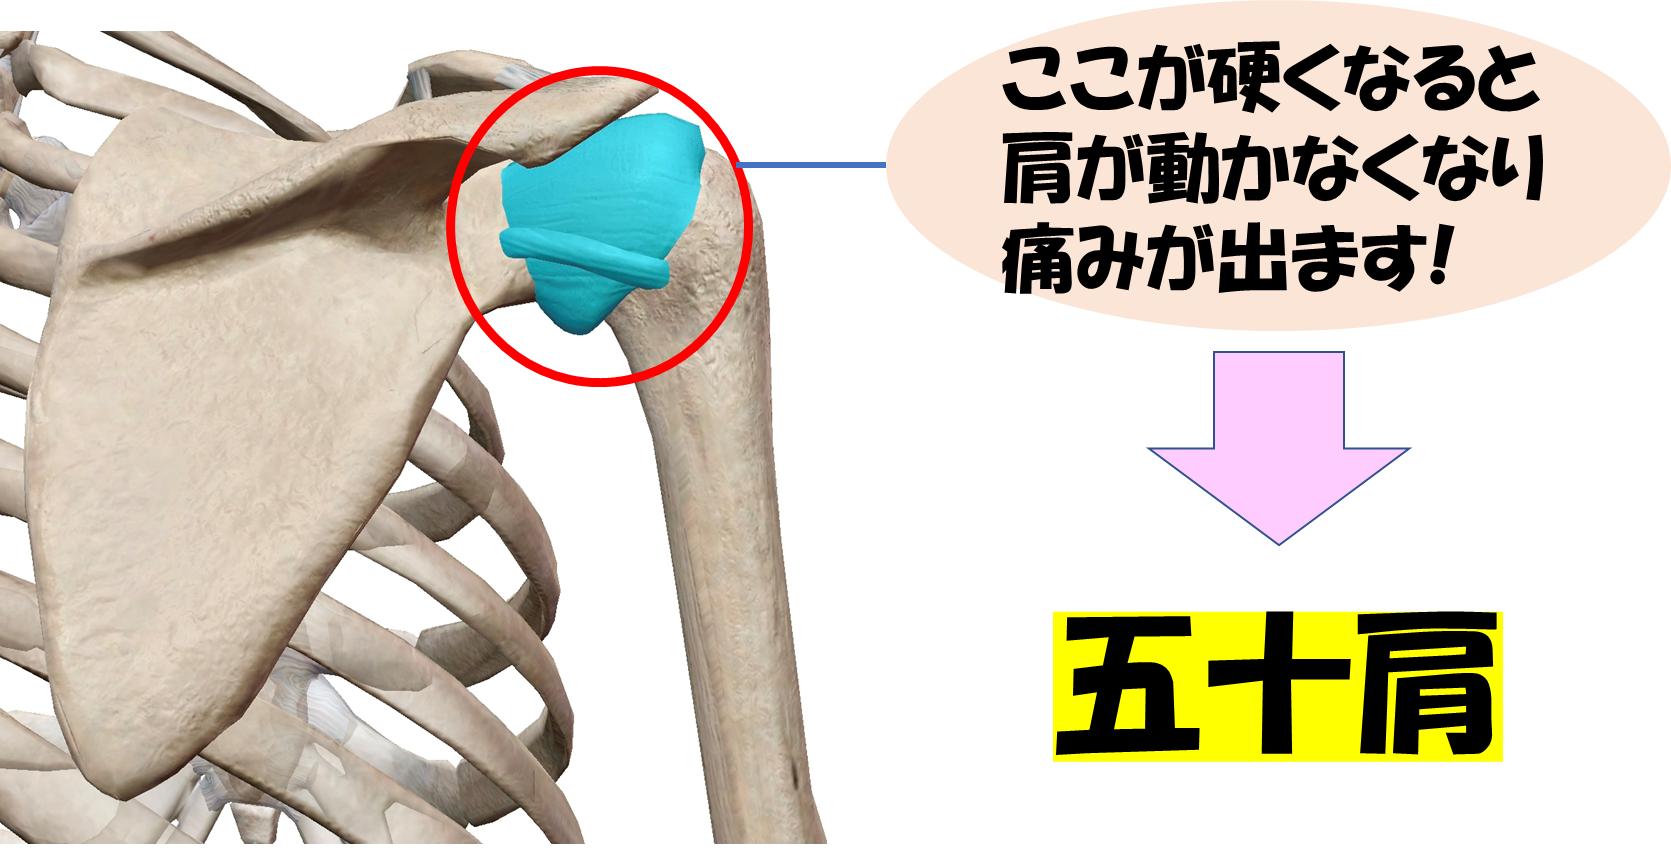 肩の構造